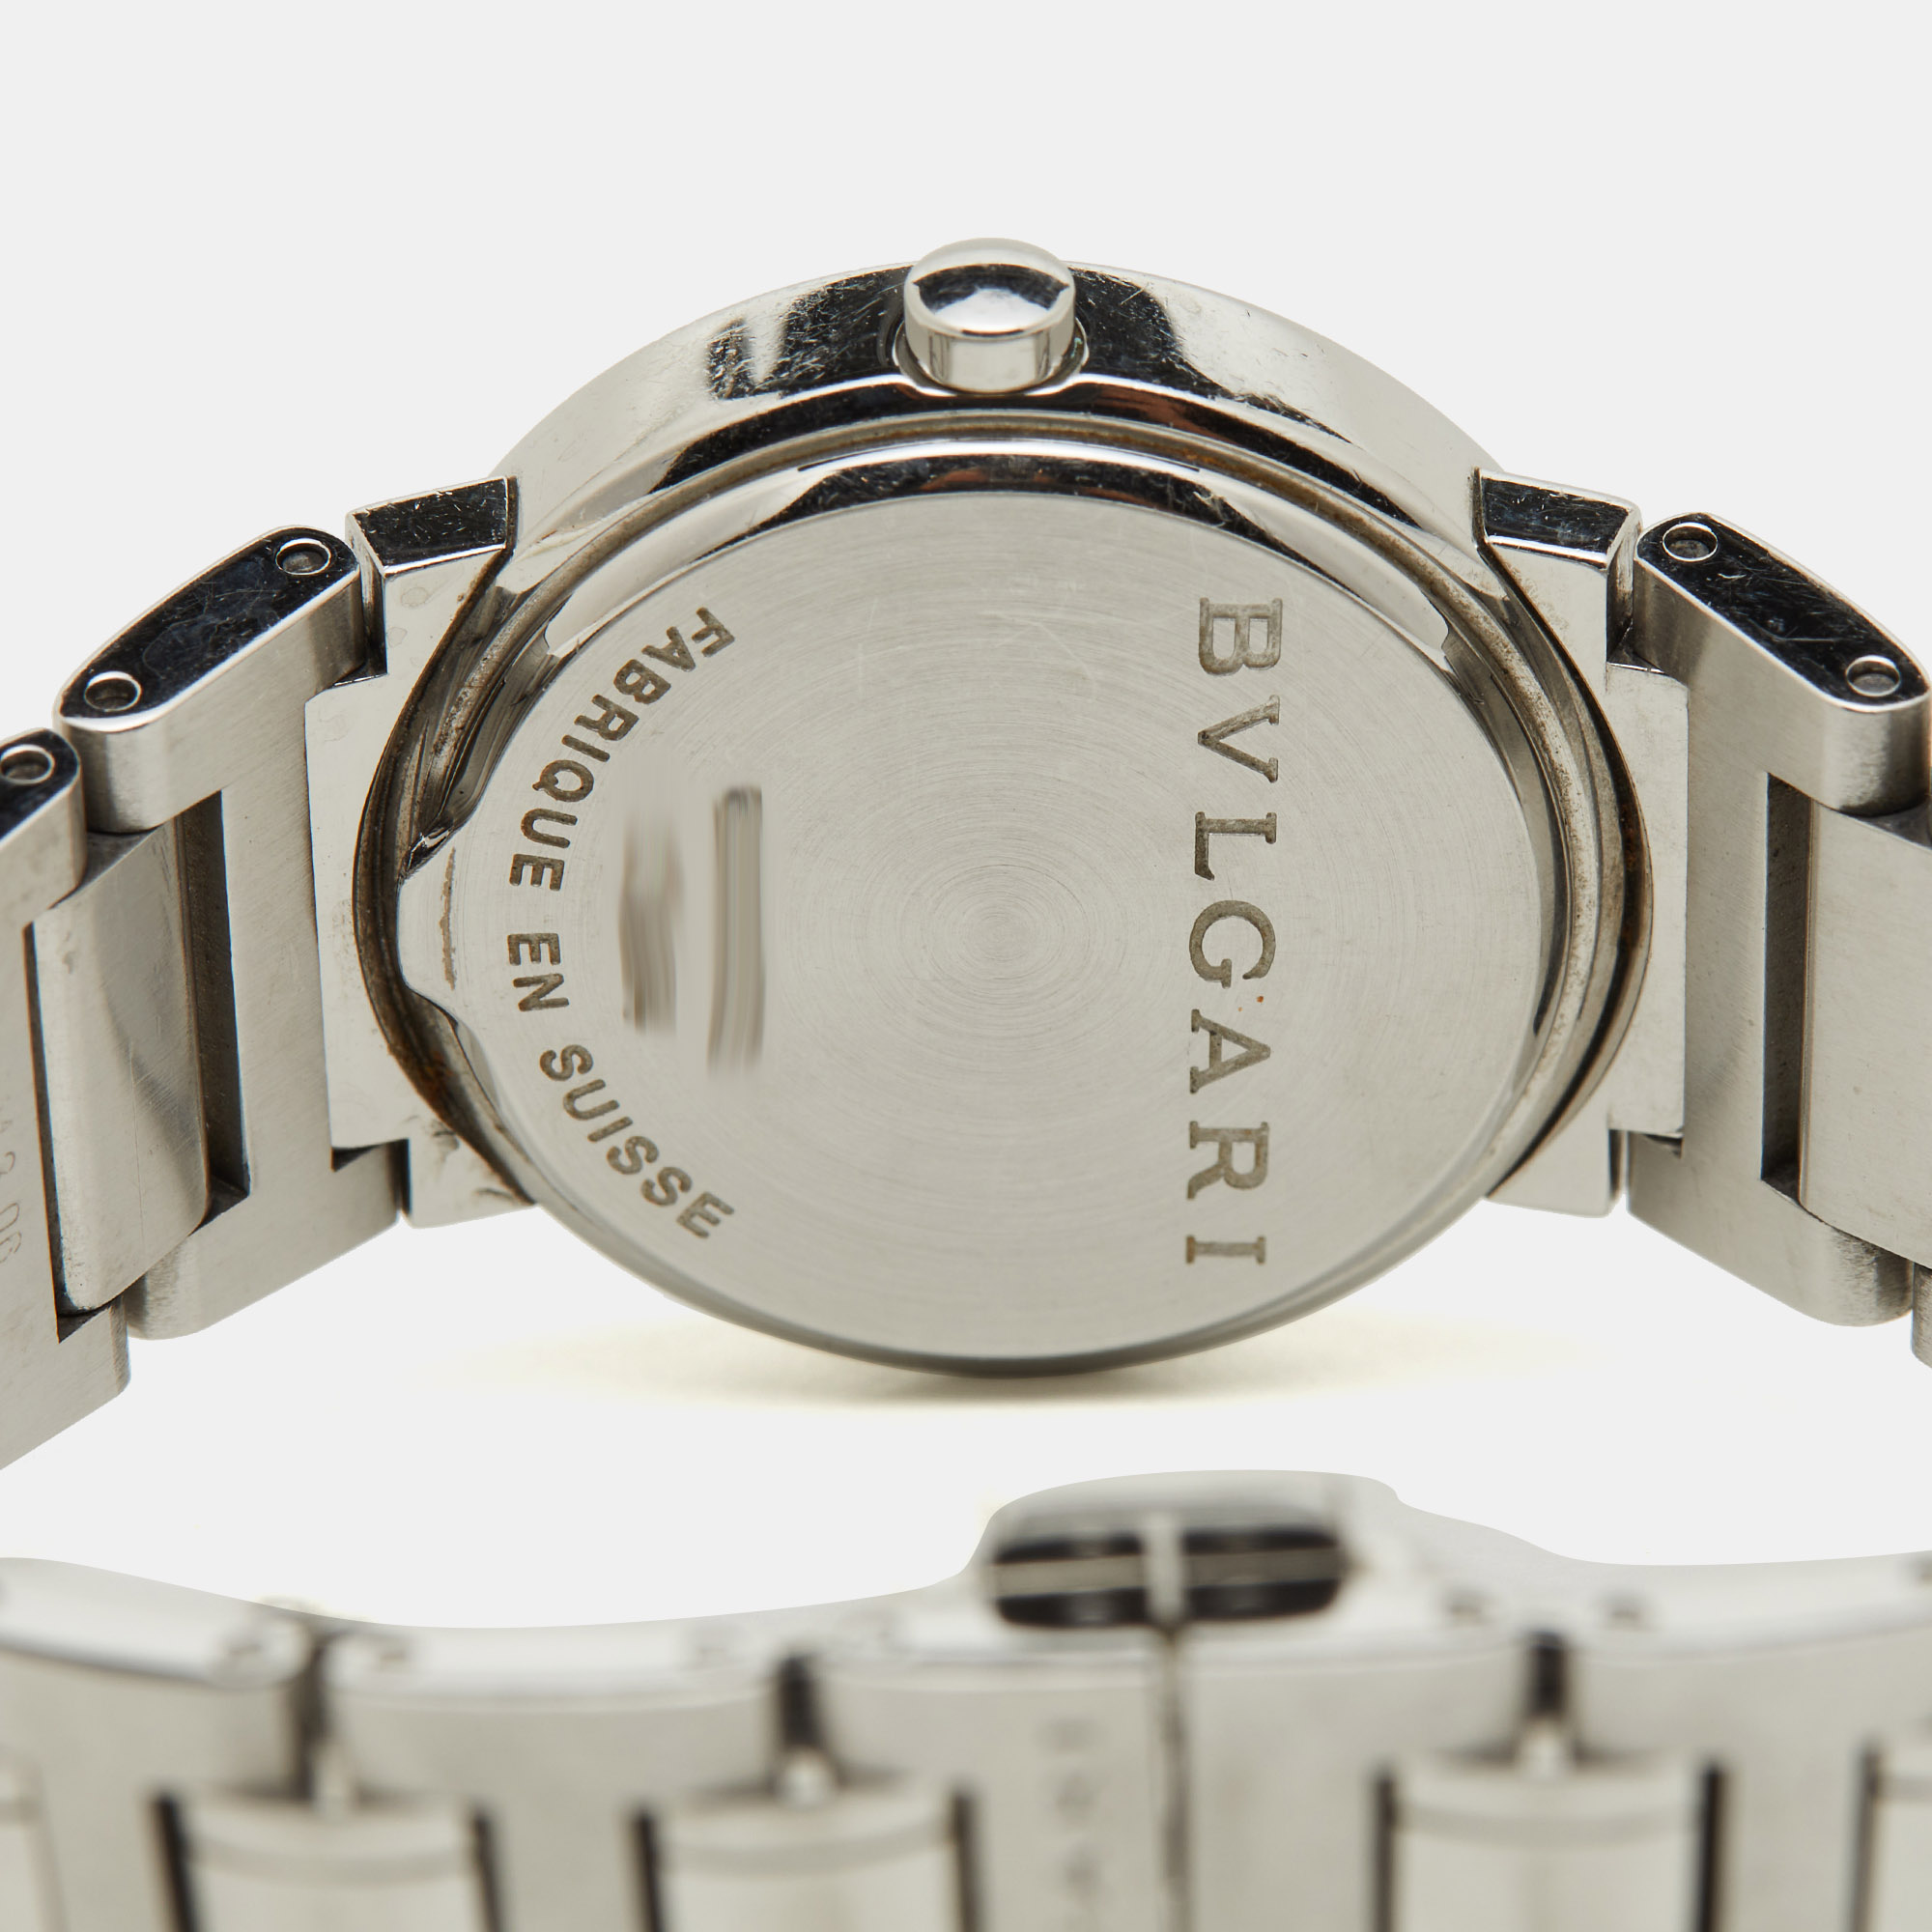 Bvlgari Silver White Stainless Steel Bvlgari Bvlgari BB26SS Women's Wristwatch 26 Mm